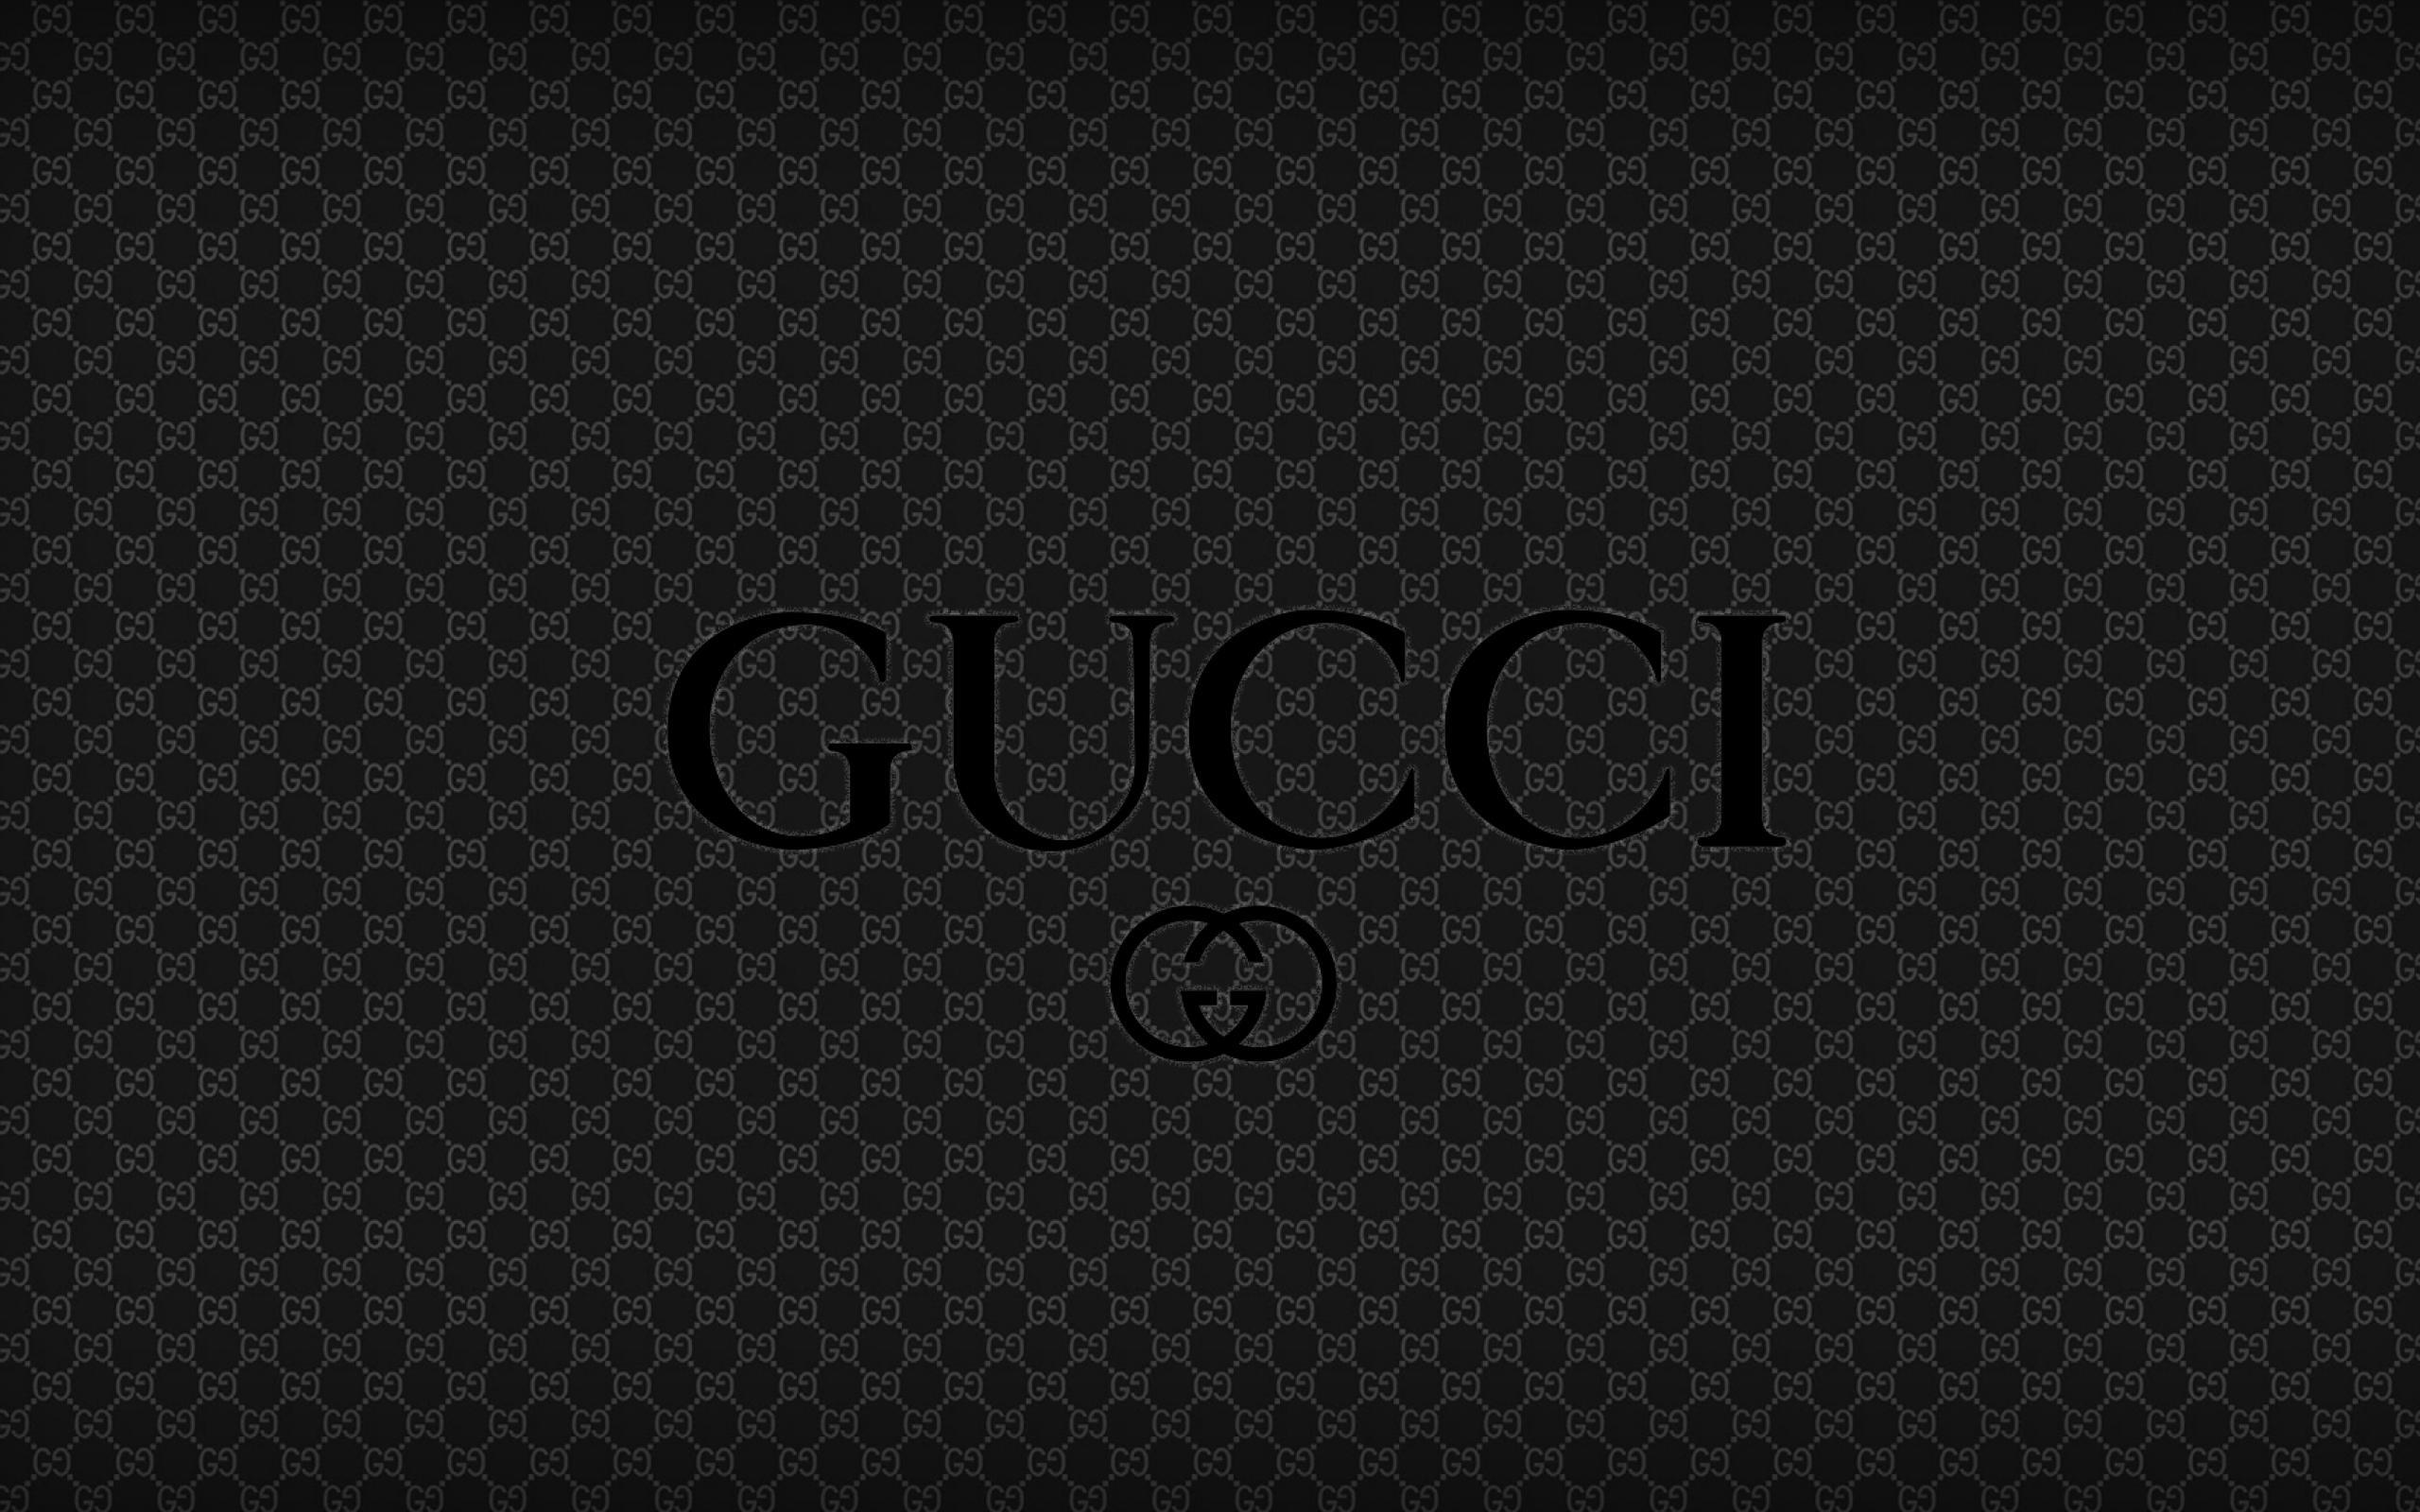 Ảnh nền Gucci đen tuyệt đẹp